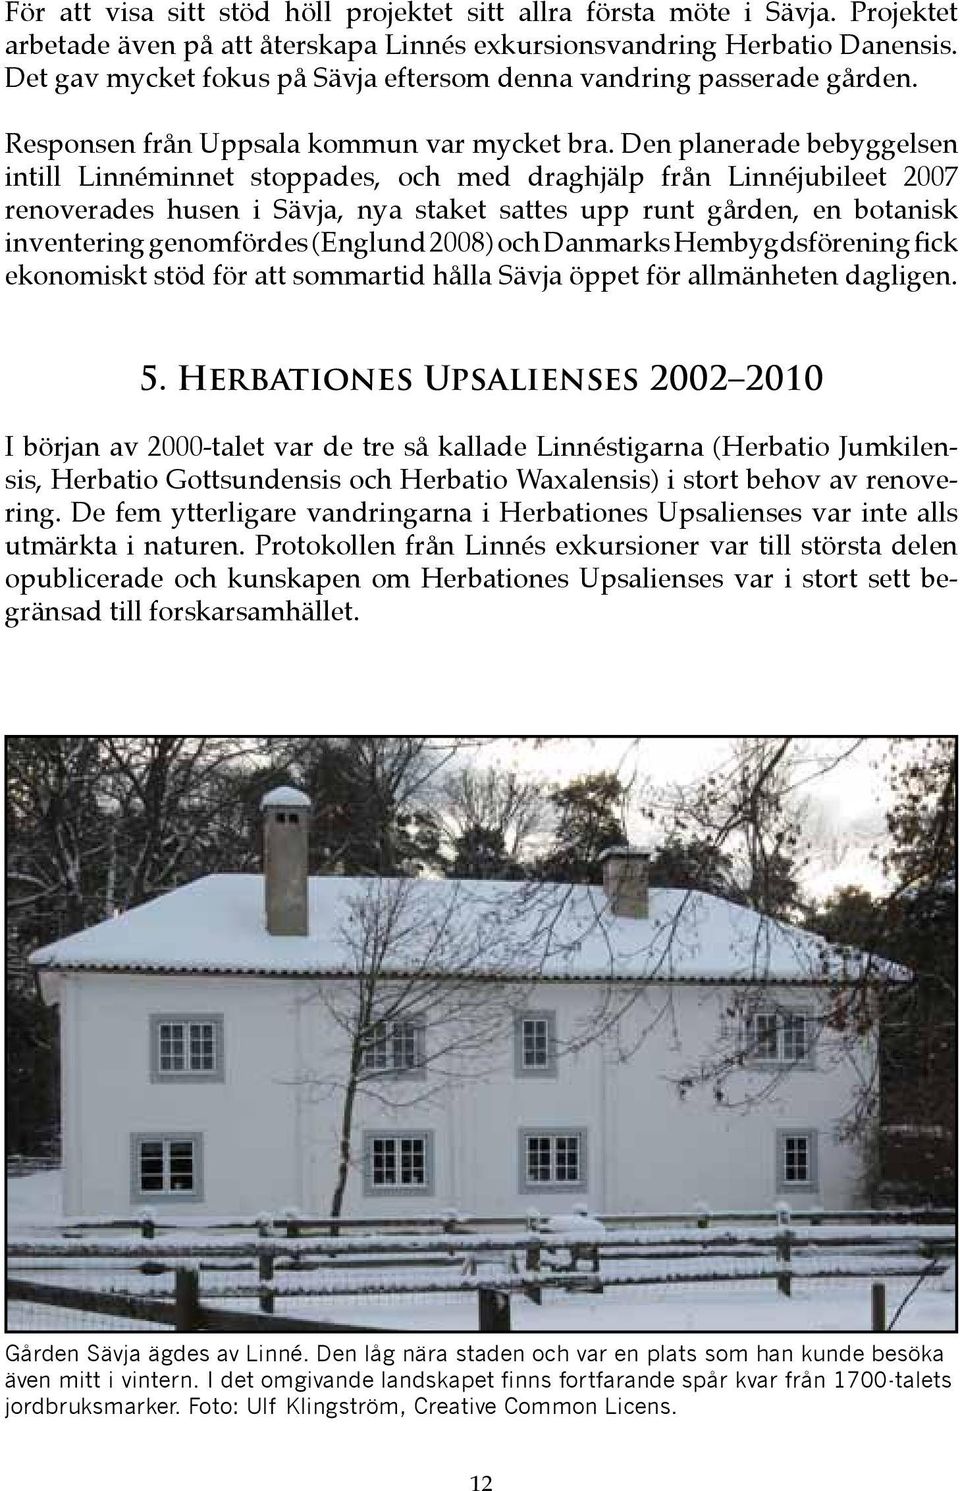 Den planerade bebyggelsen intill Linnéminnet stoppades, och med draghjälp från Linnéjubileet 2007 renoverades husen i Sävja, nya staket sattes upp runt gården, en botanisk inventering genomfördes